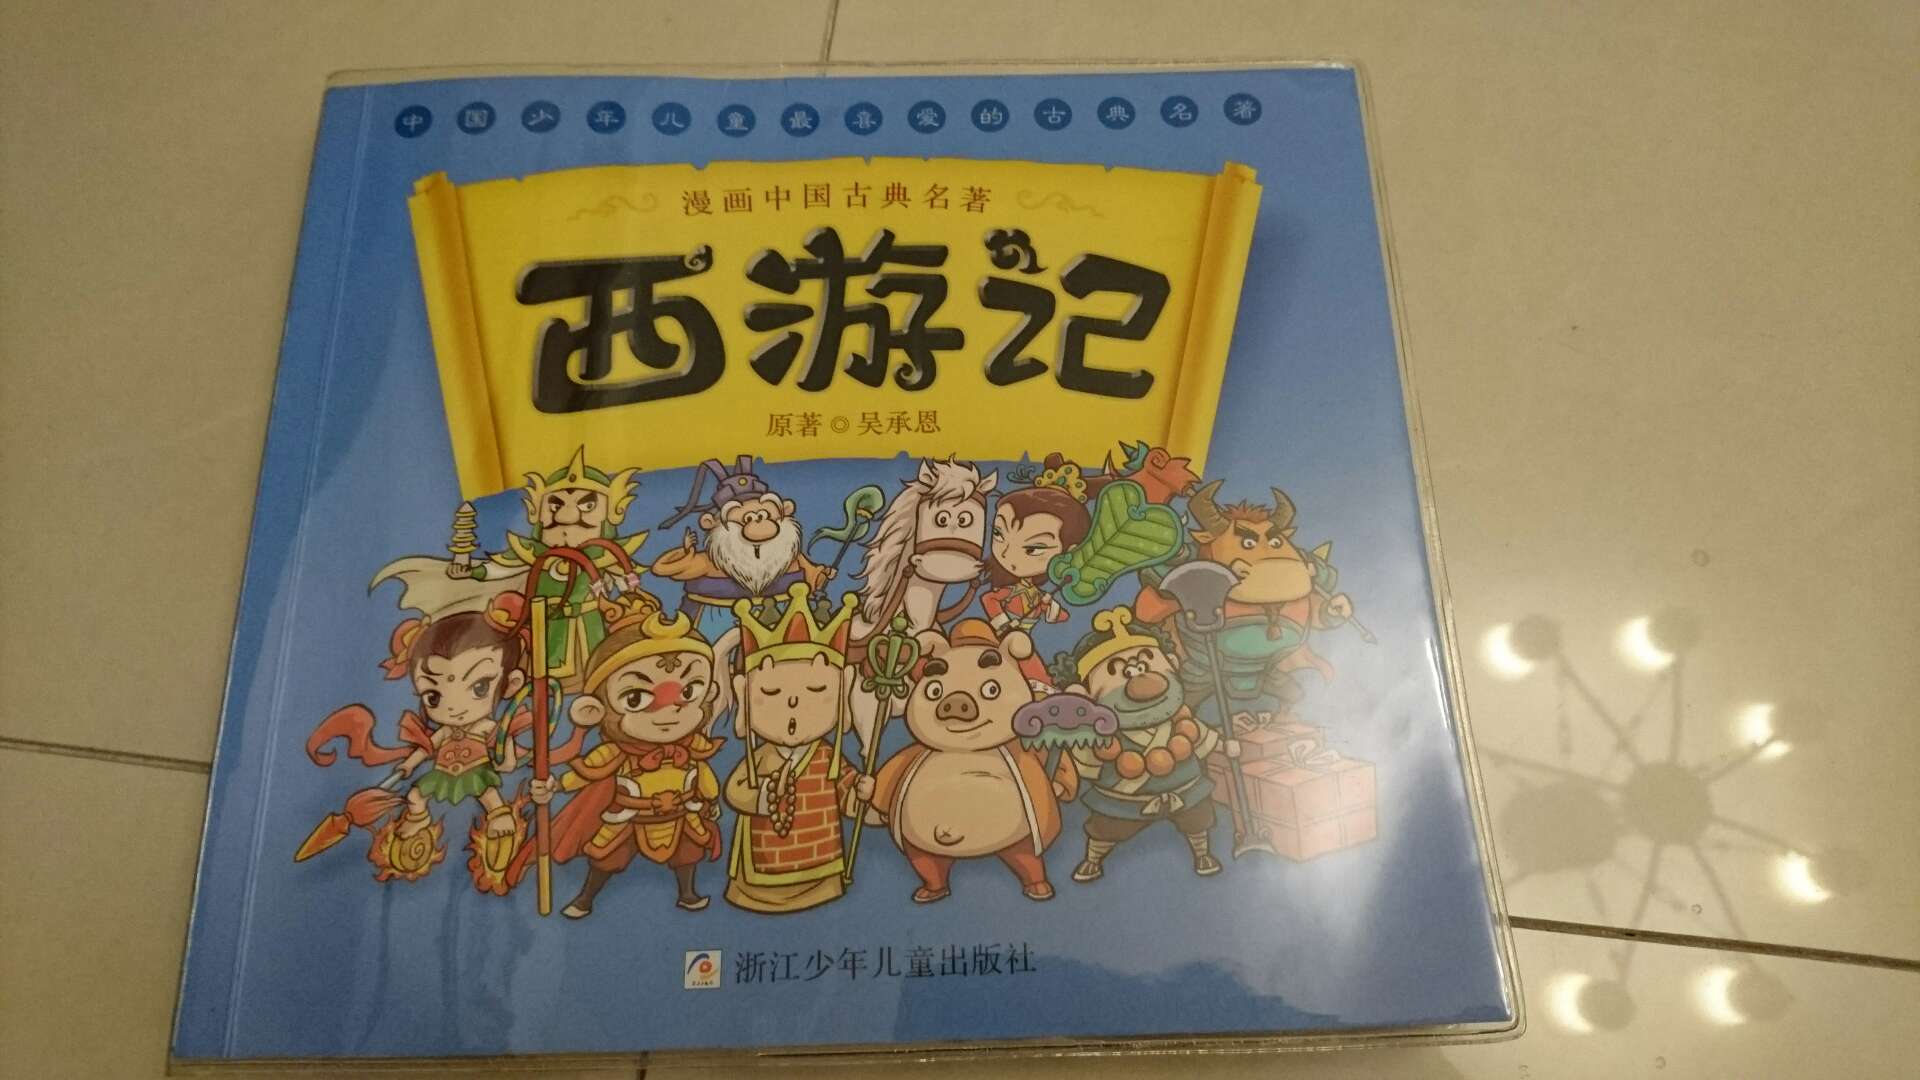 中国文化的精髓啊，漫画形式孩子也能喜欢和接受，促销价格也很给力